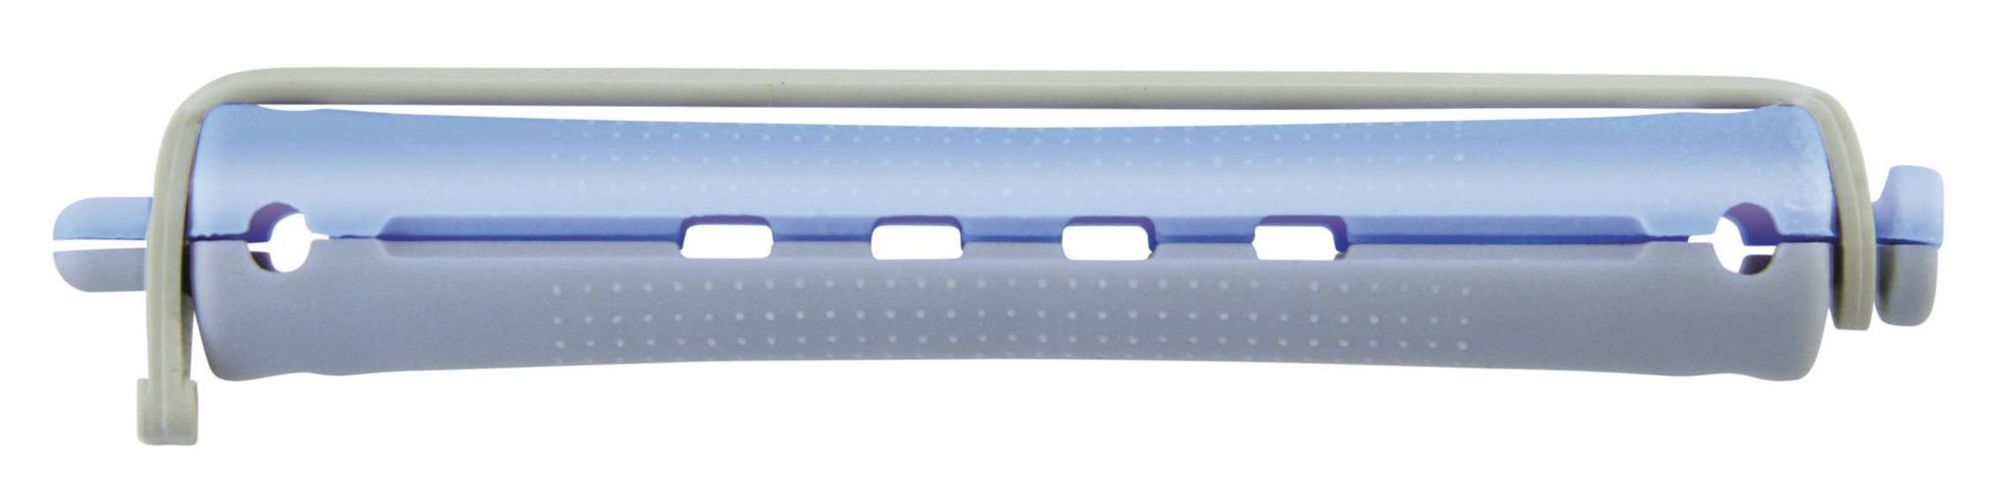 Comair Permanentwikkels lang grijs/blauw 13mm Grijs/blauw 12 stuks